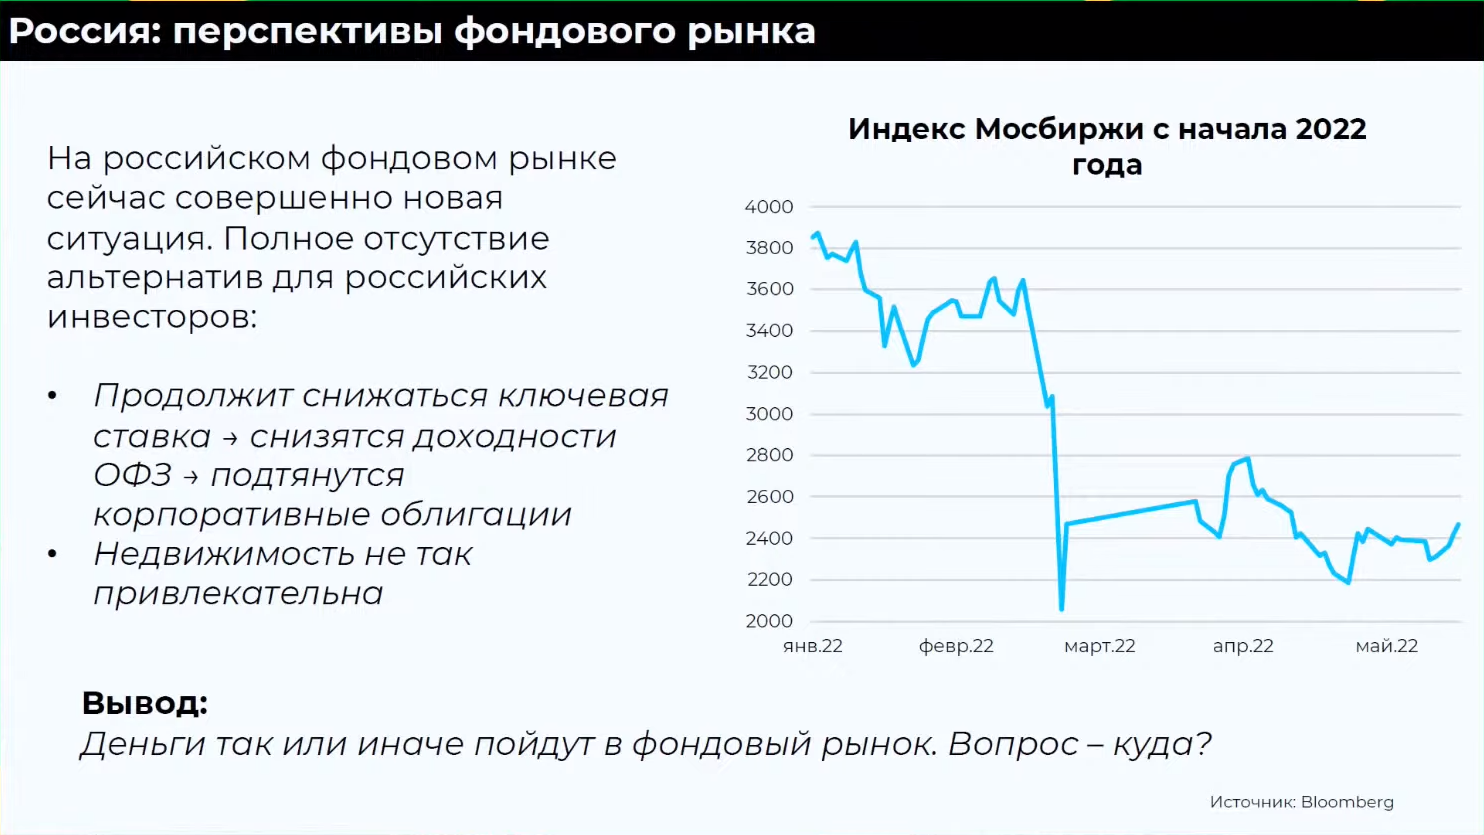 Коган считает, что российский фондовый рынок может вырасти к концу 2022 года